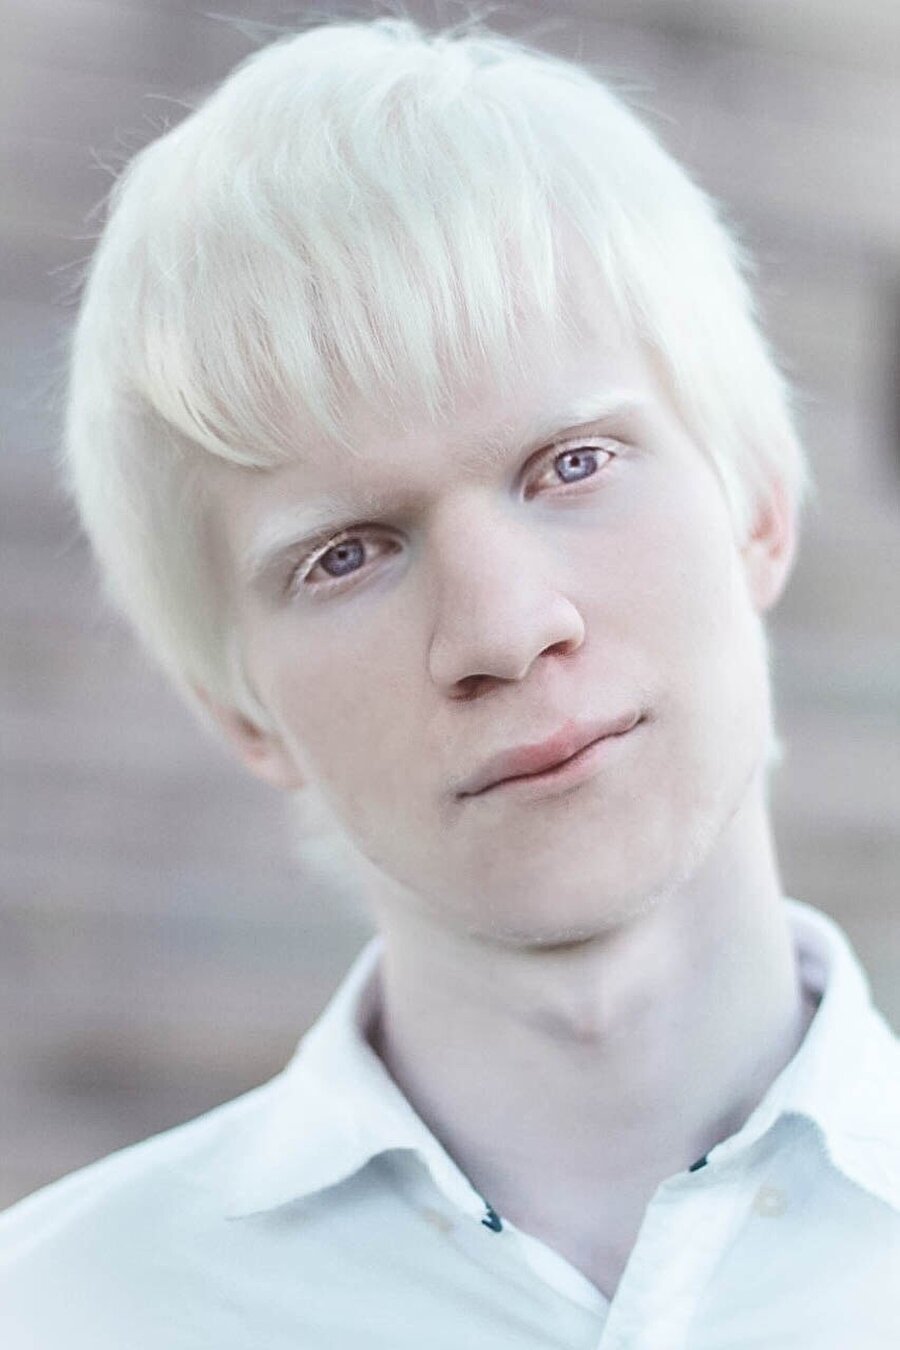 Albino nedir? 
Albino, "Albinizm", renklenmeyi sağlayan melanin pigmentinin azlığı veya hiç olmaması sebebiyle kaynaklanan genetik bir hastalıktır.